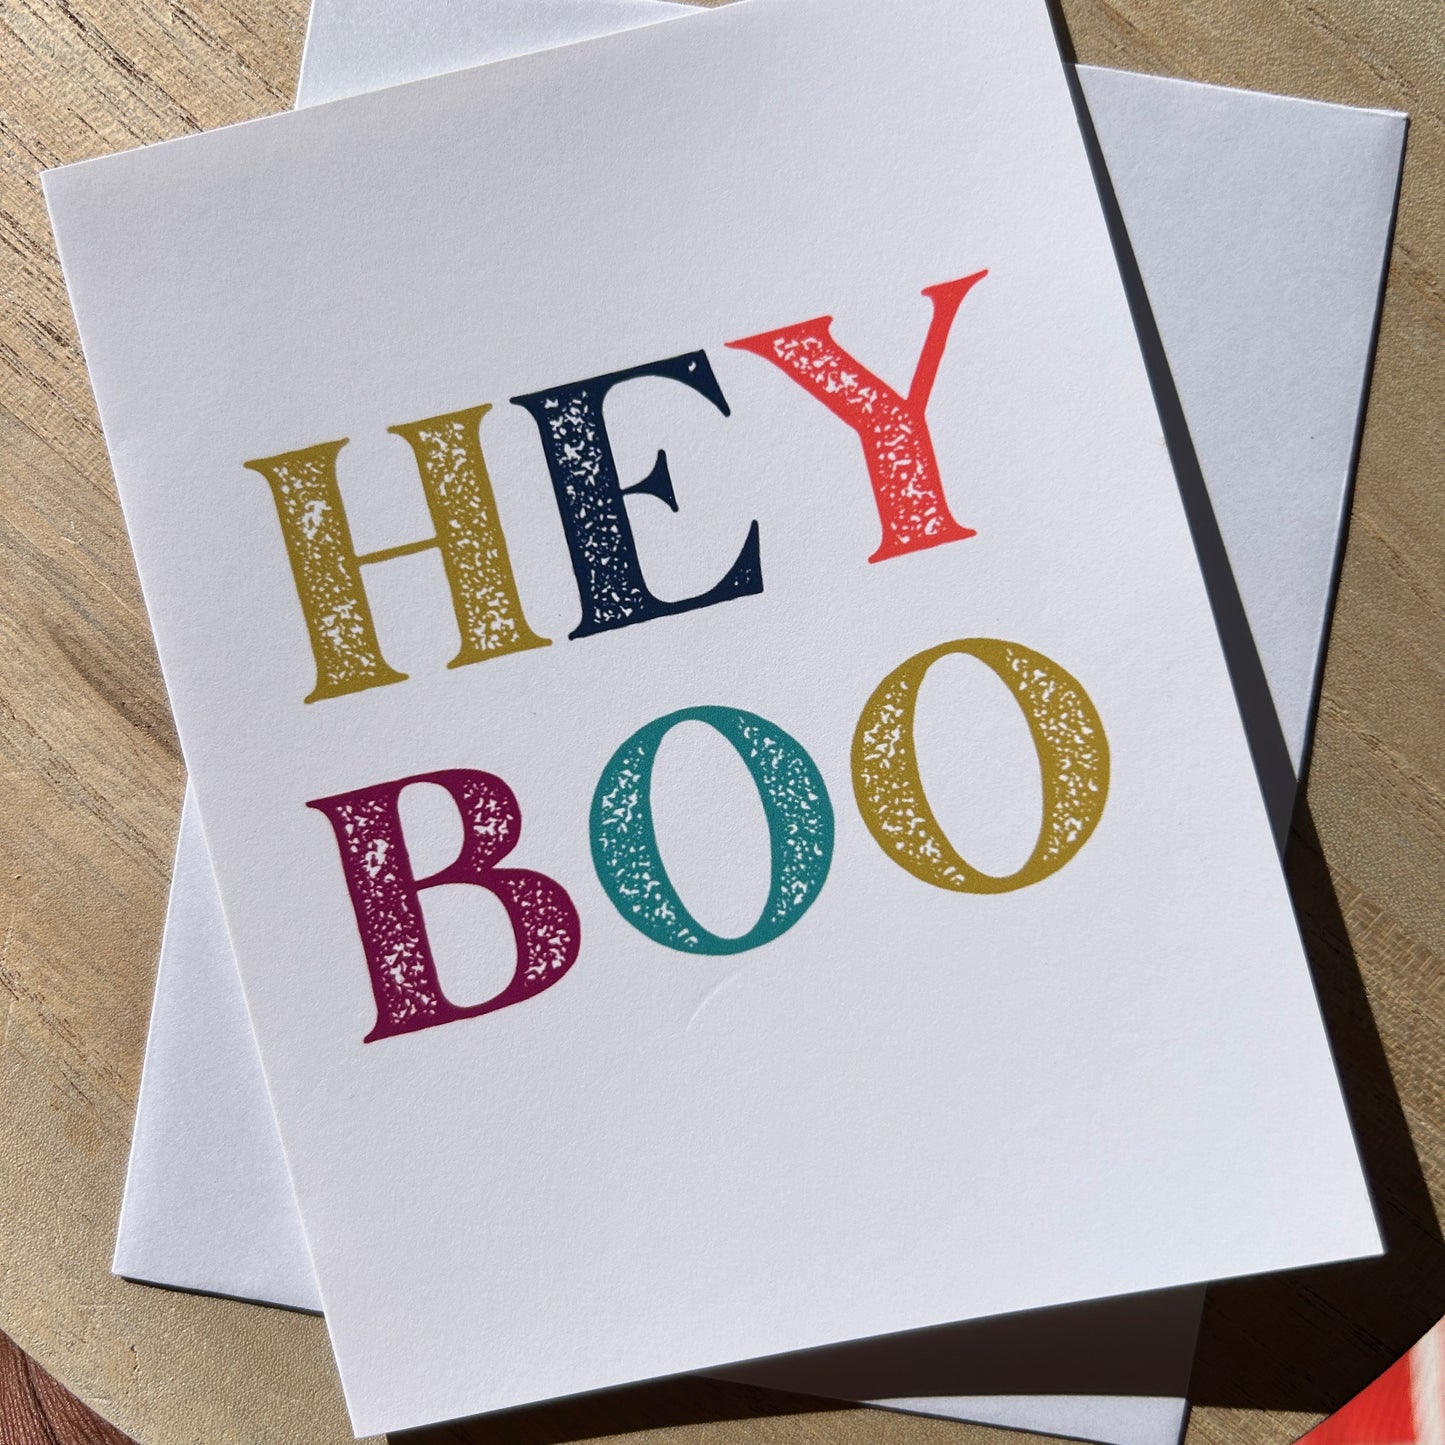 Hey Boo Greeting Card